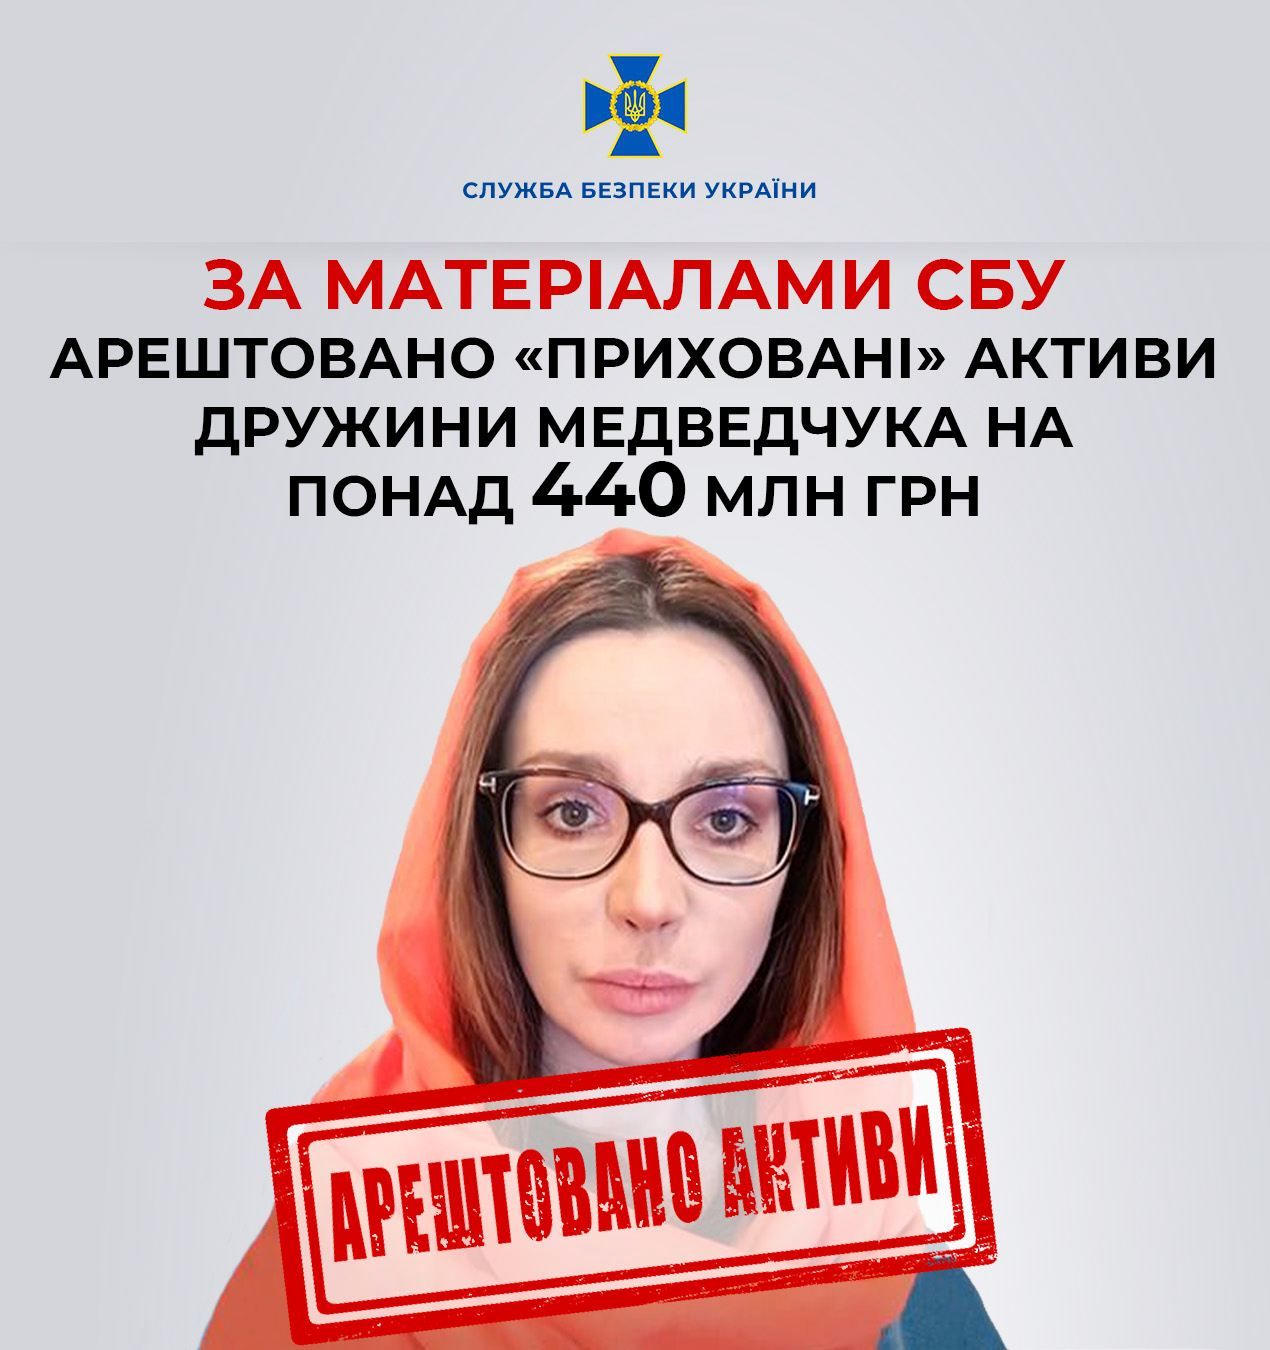 Арештовано «приховані» активи дружини Медведчука на мільйони гривень – СБУ